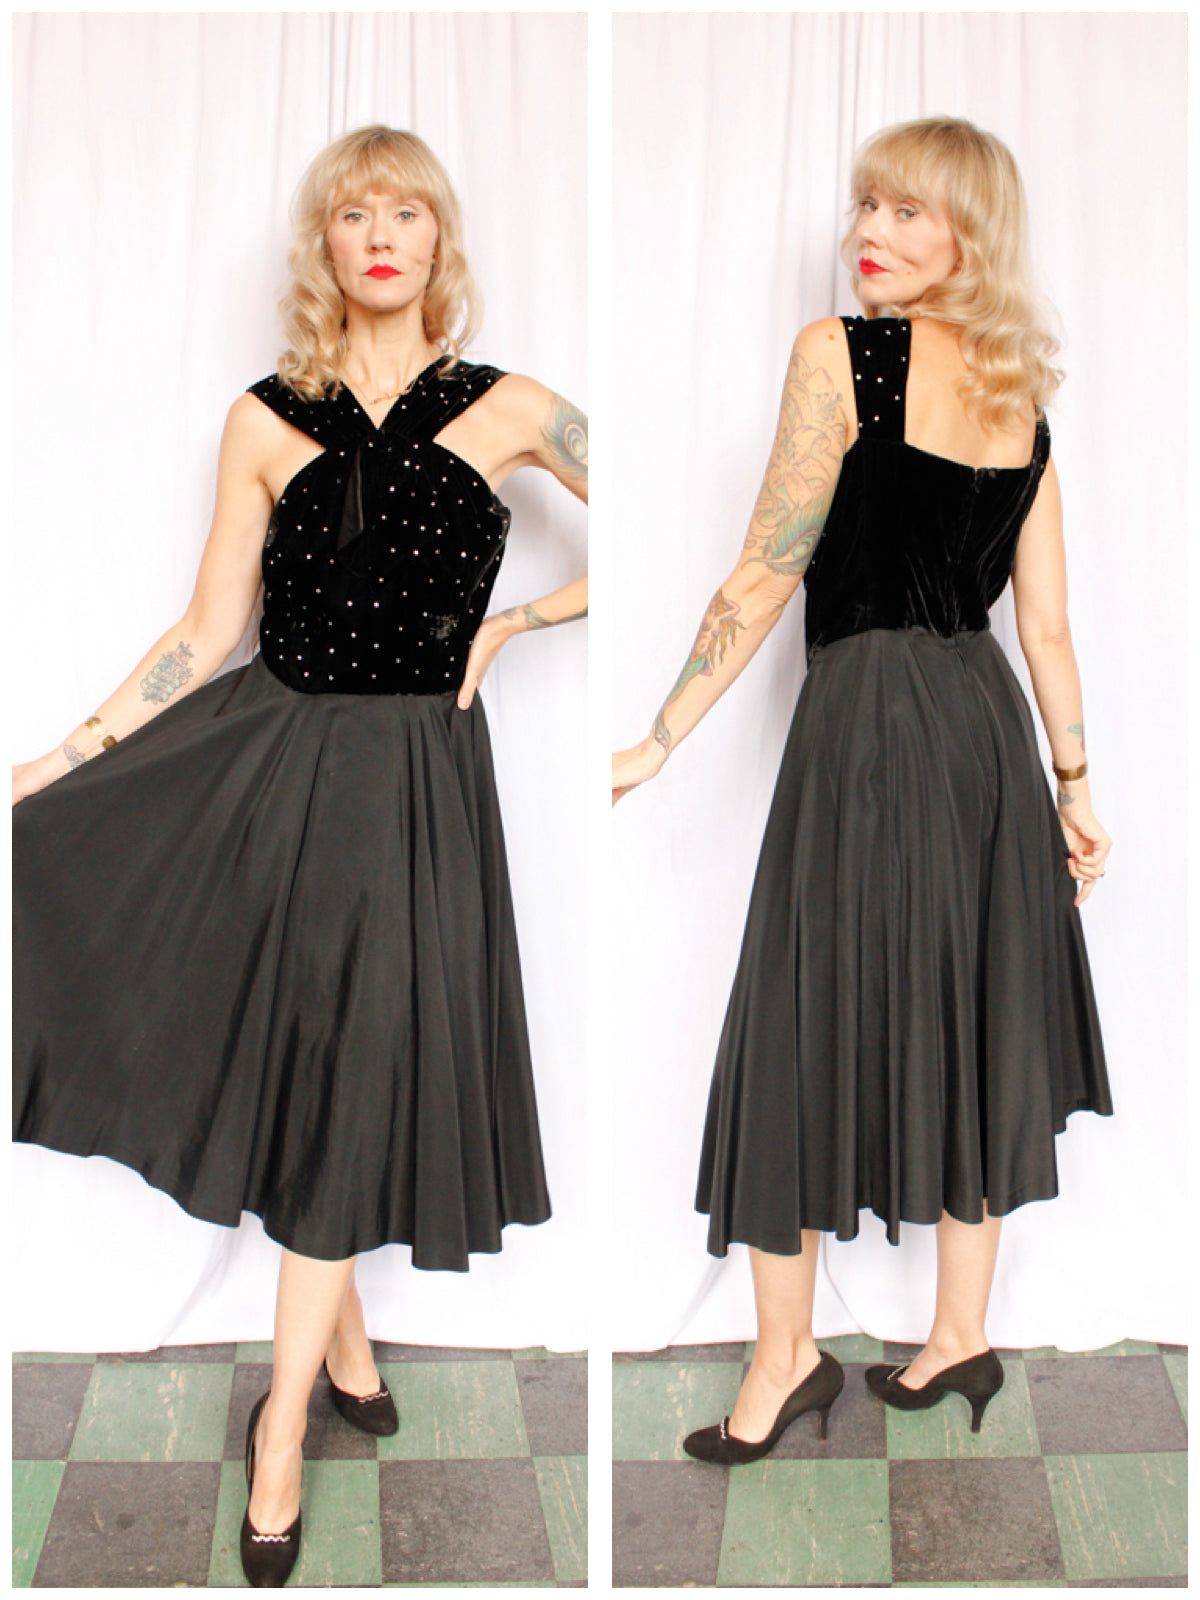 1940s Velvet & Rhinestone Party Dress - Medium